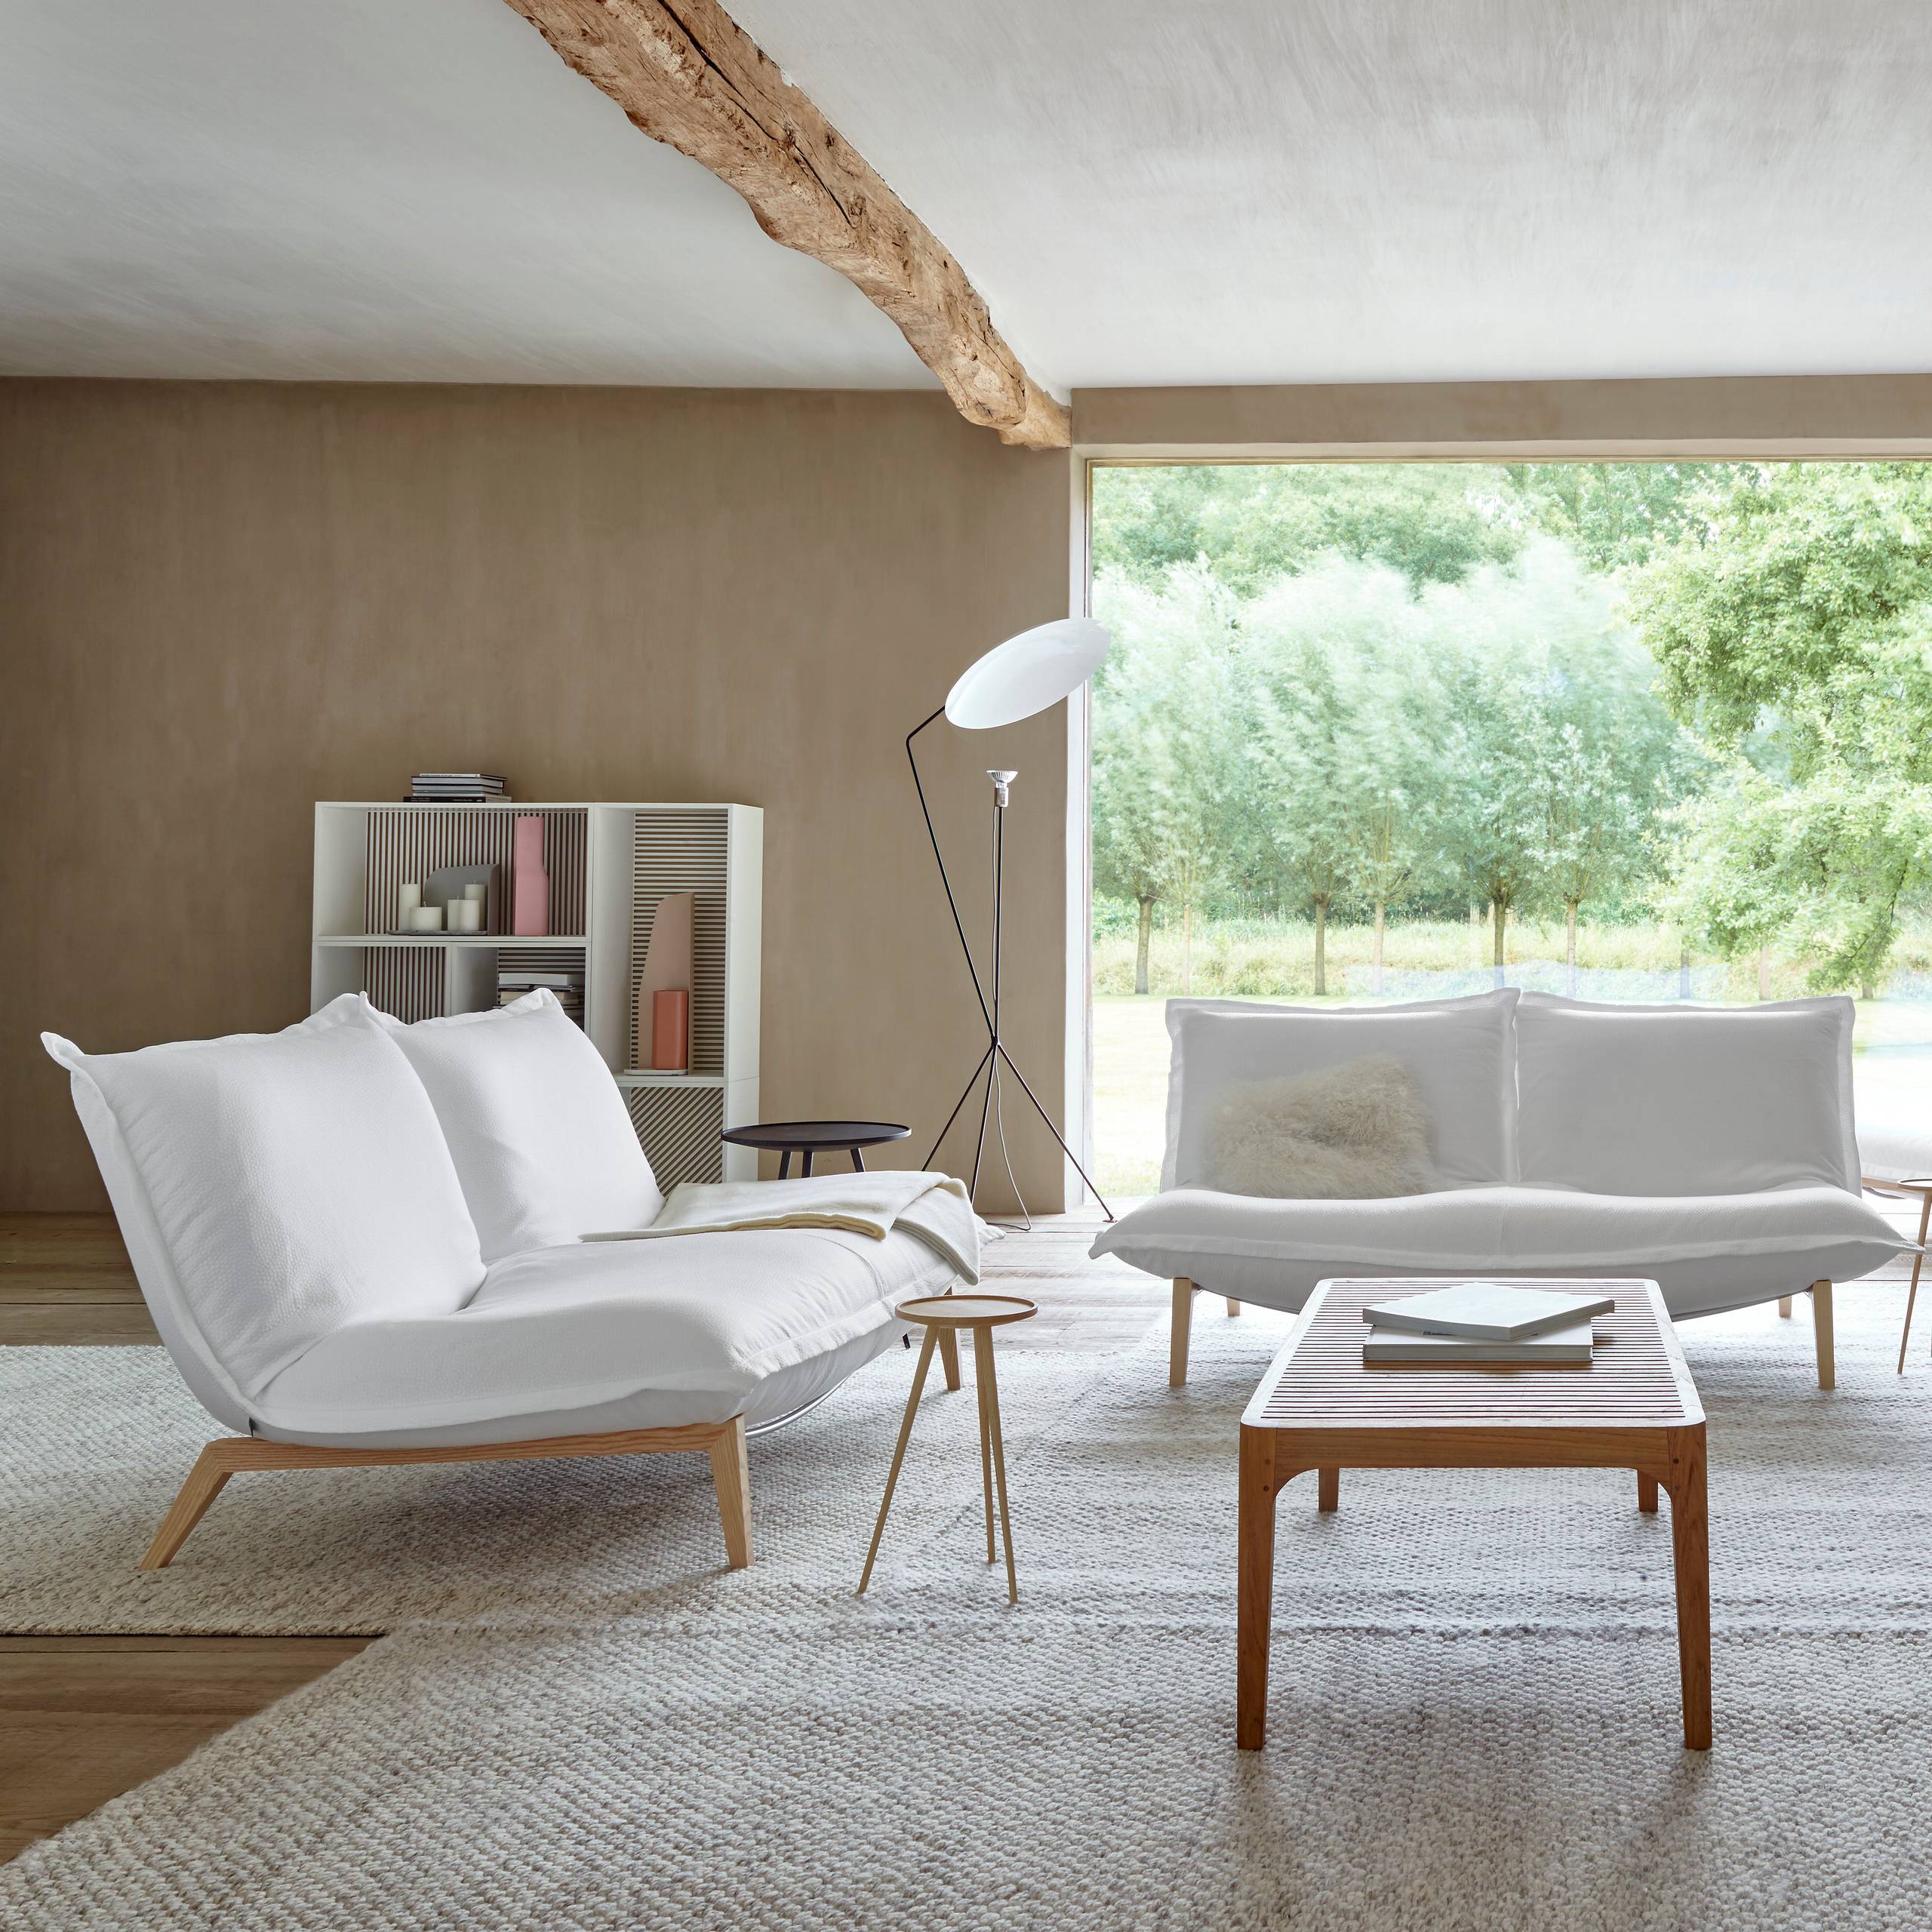 Calin - Contemporary - Living Room - Lyon - by Cinna Officiel | Houzz